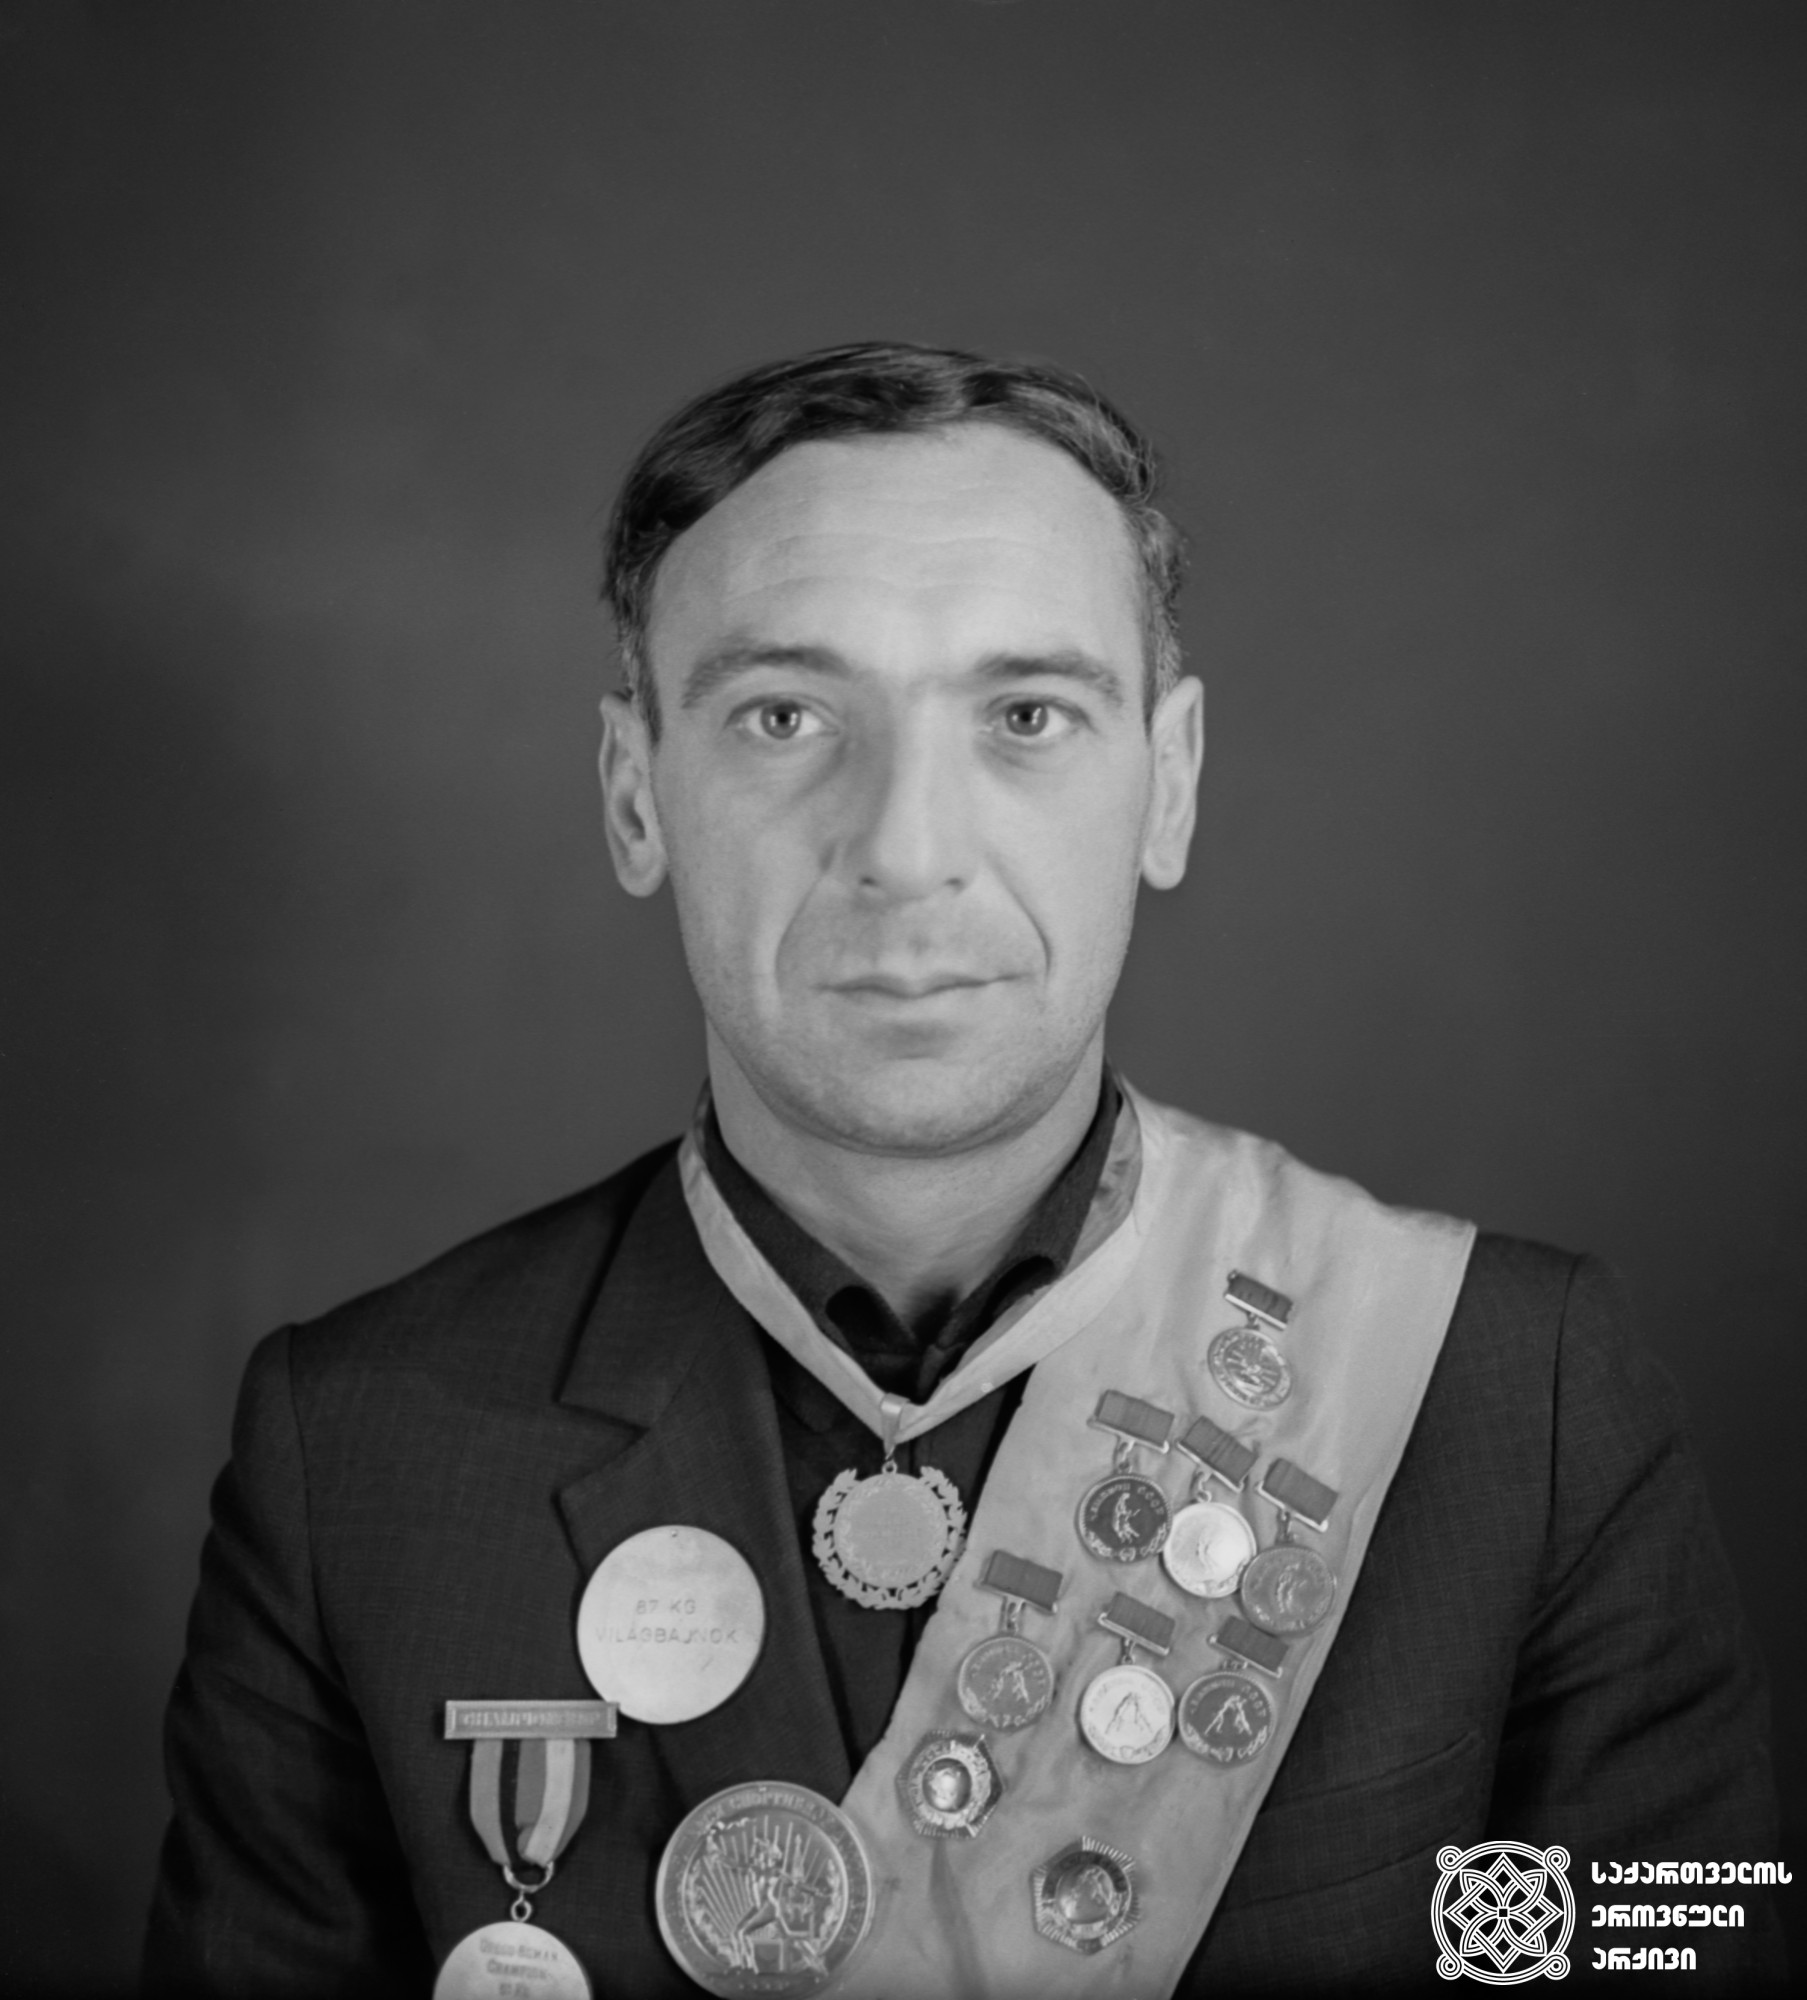 ლევან სანაძე. <br>
XV ოლიმპიური თამაშების მეორე პრიზიორი მძლეოსნობაში (1952 წელი, ჰელსინკი). <br>
Levan Sanadze. <br>
Second-prize winner of the XV Olympic Games in Triathlon (1952, Helsinki).